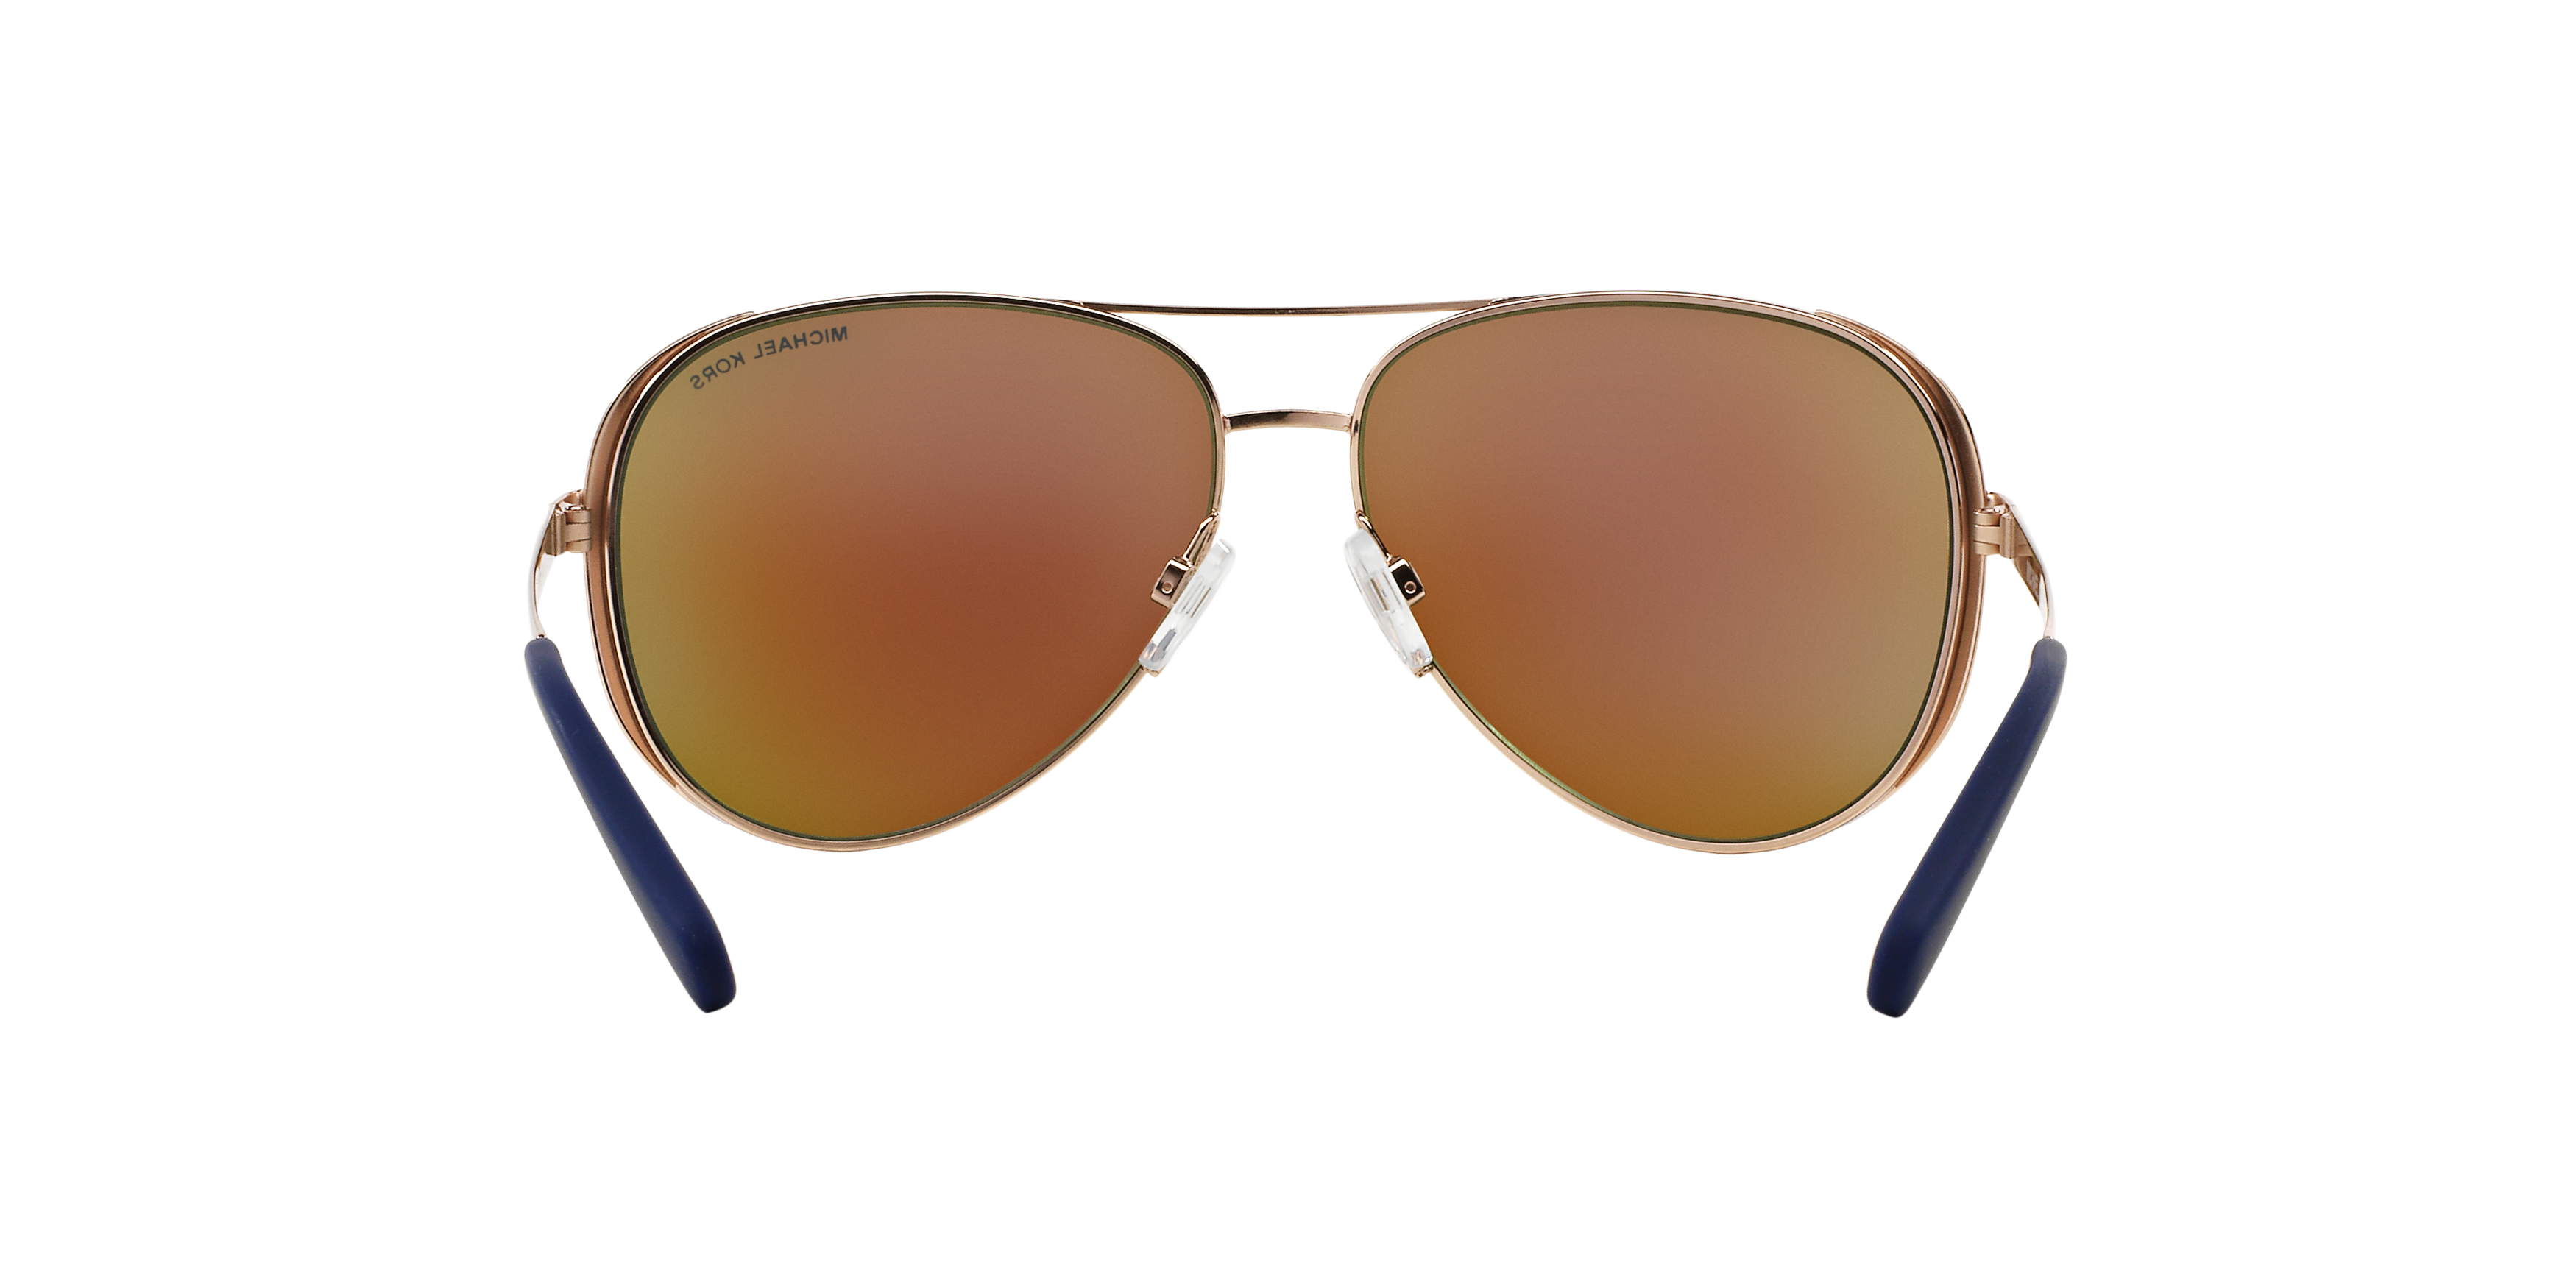 Detail02 Michael Kors MK 5004 Sunglasses Brown / Gold